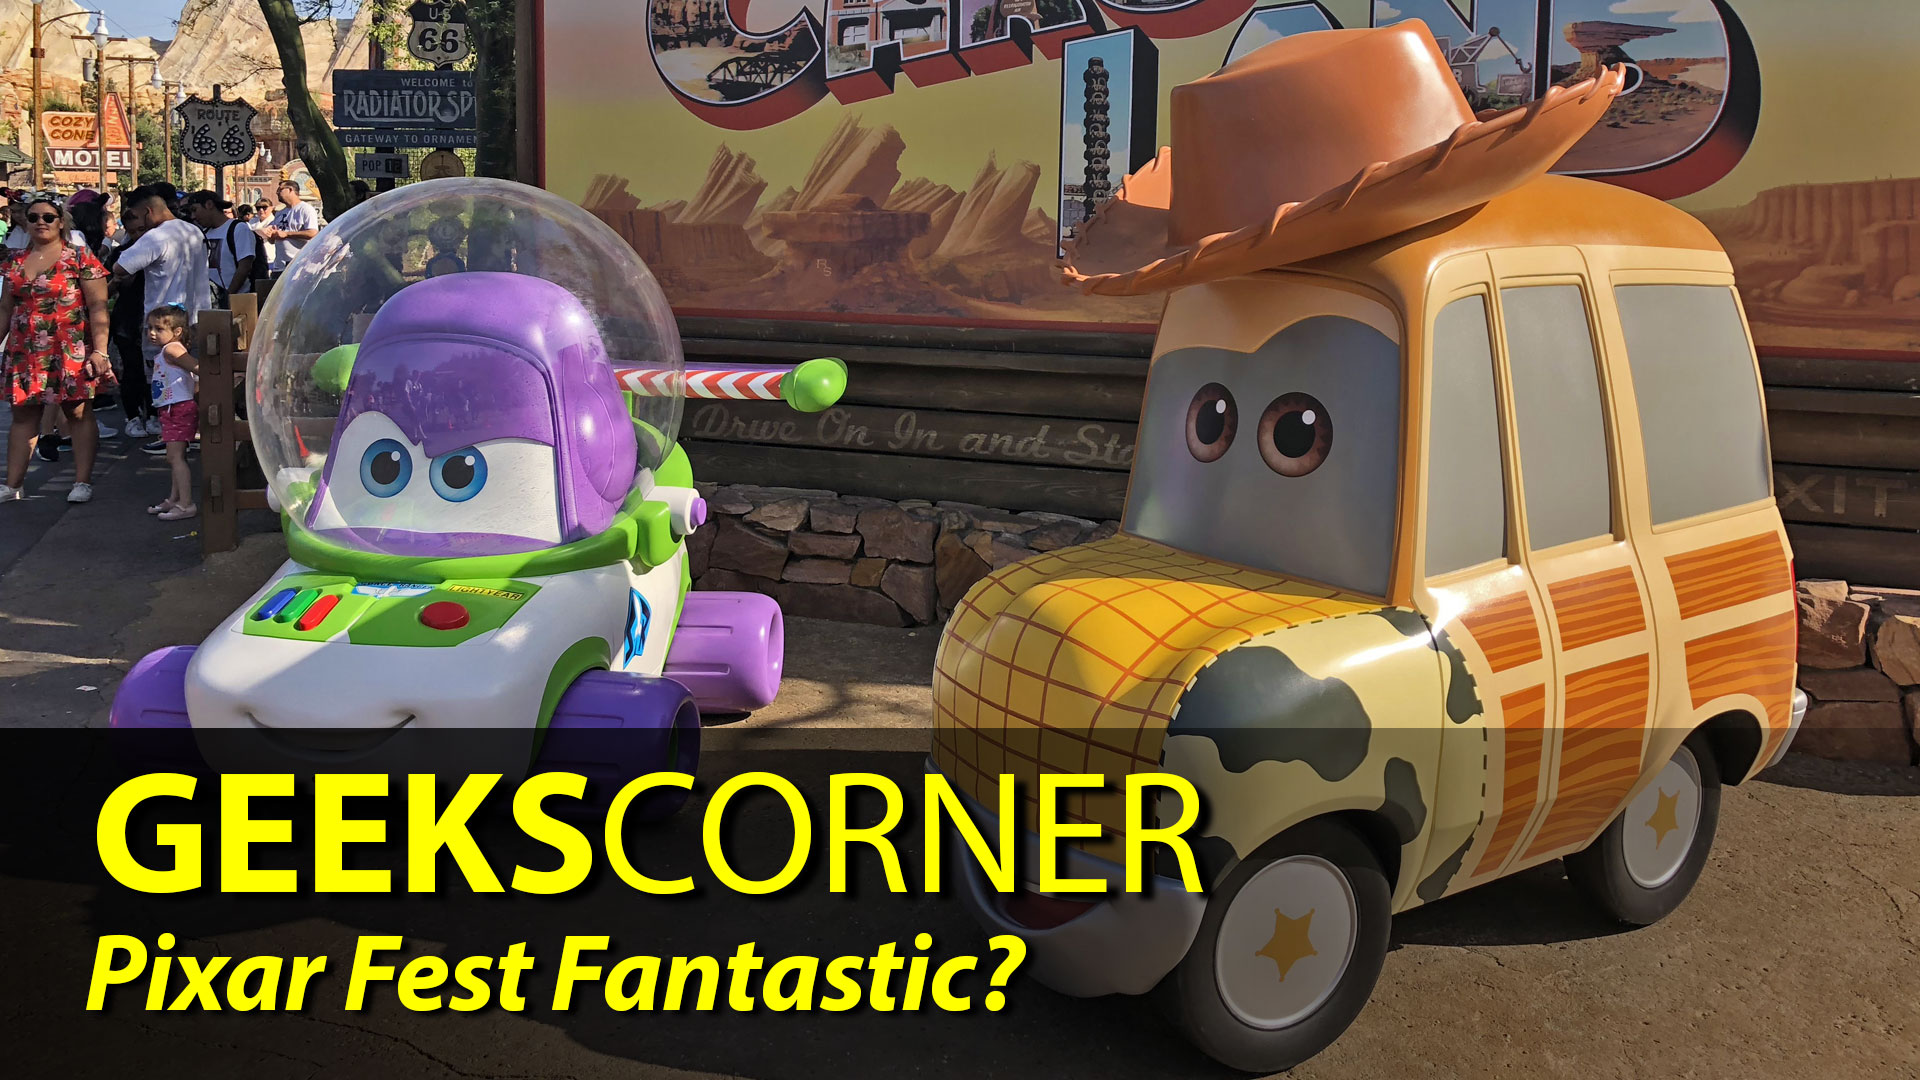 Pixar Fest Fantastic? - GEEKS CORNER - Episode 829